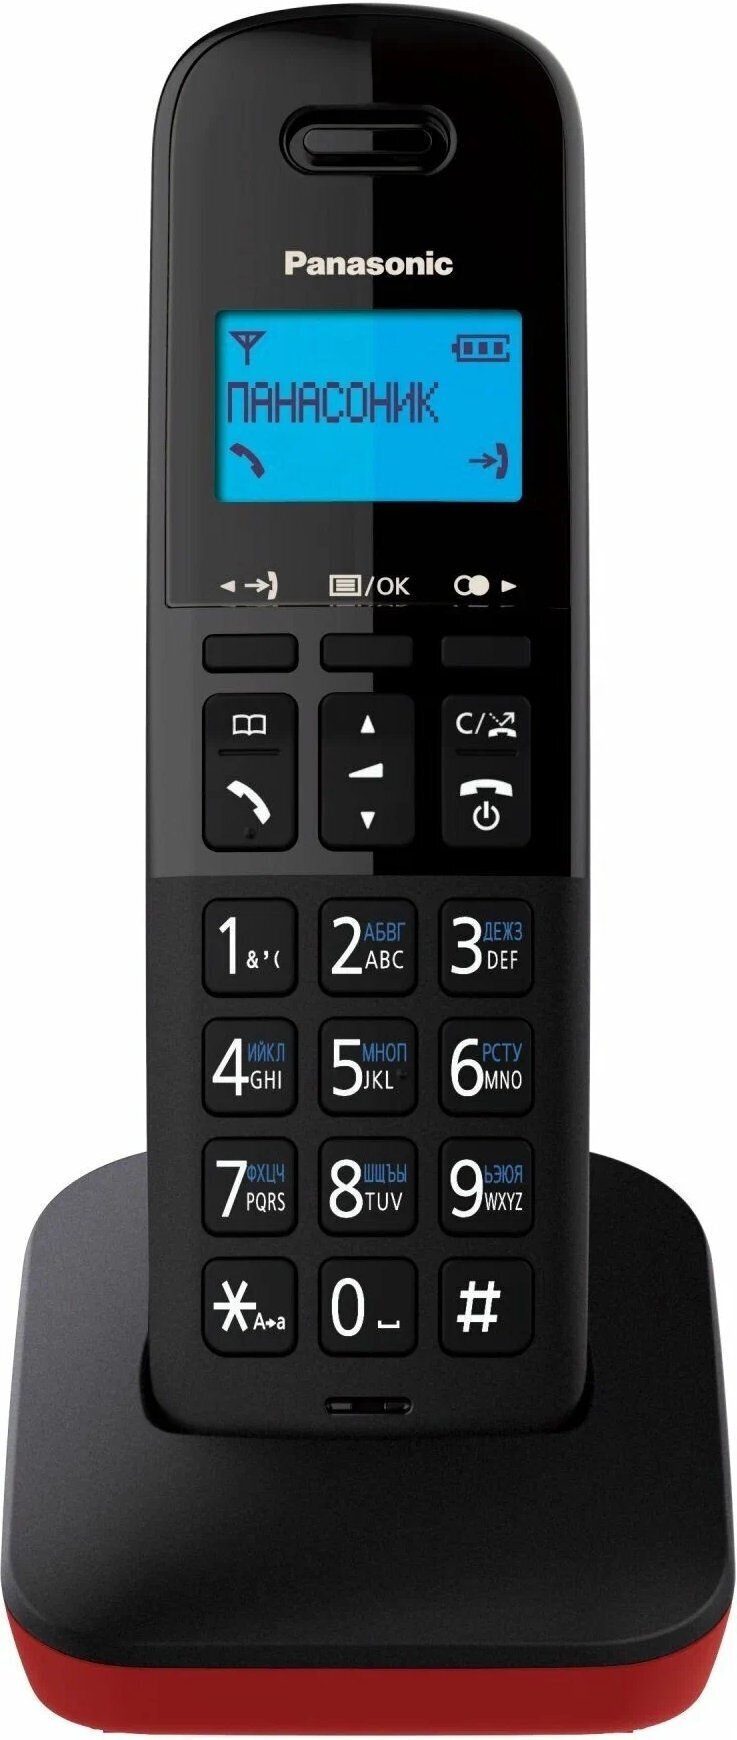 Телефон Panasonic KX-TGB610RUR красный/черный